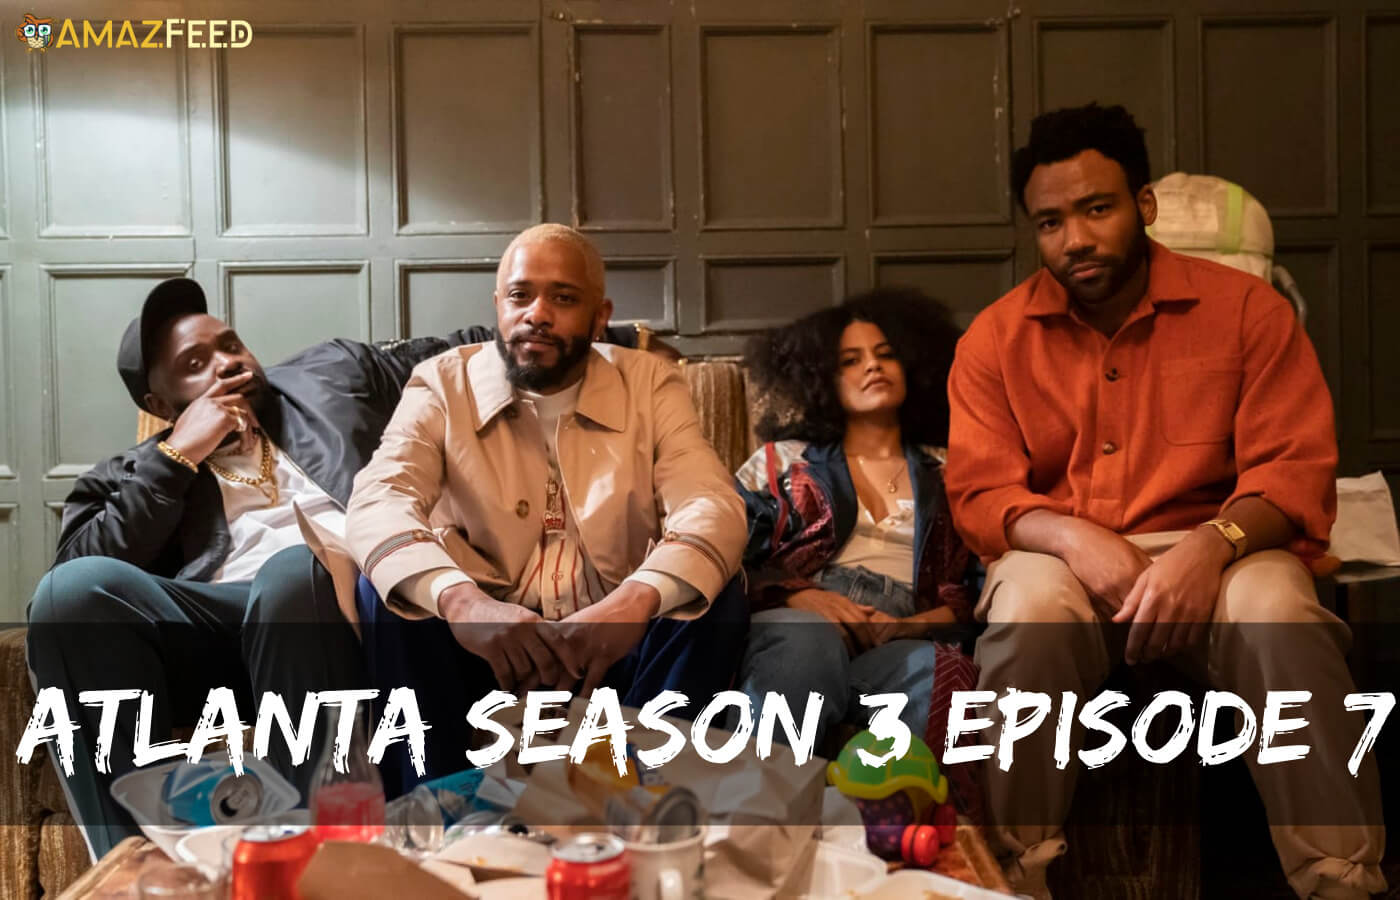 Atlanta Season 3 Episode 7 release date